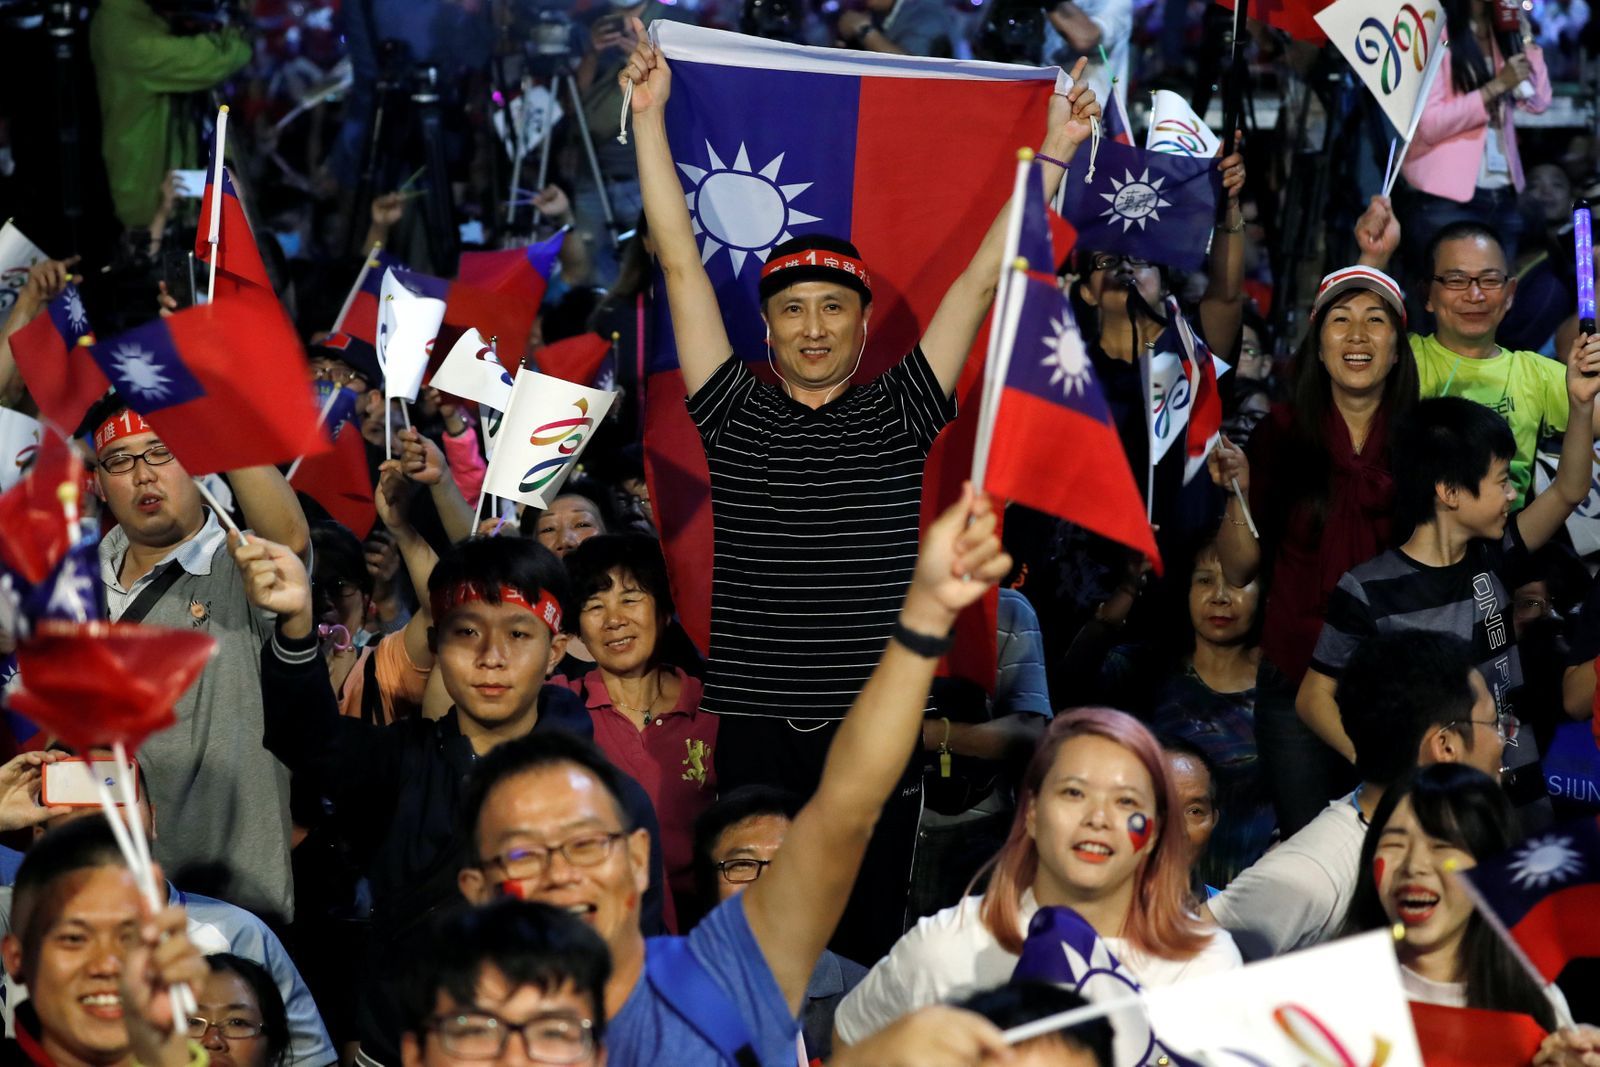 Tchajwanská Národní strana (Kuomintang) vyhrála regionální volby. Její příznivci slaví.